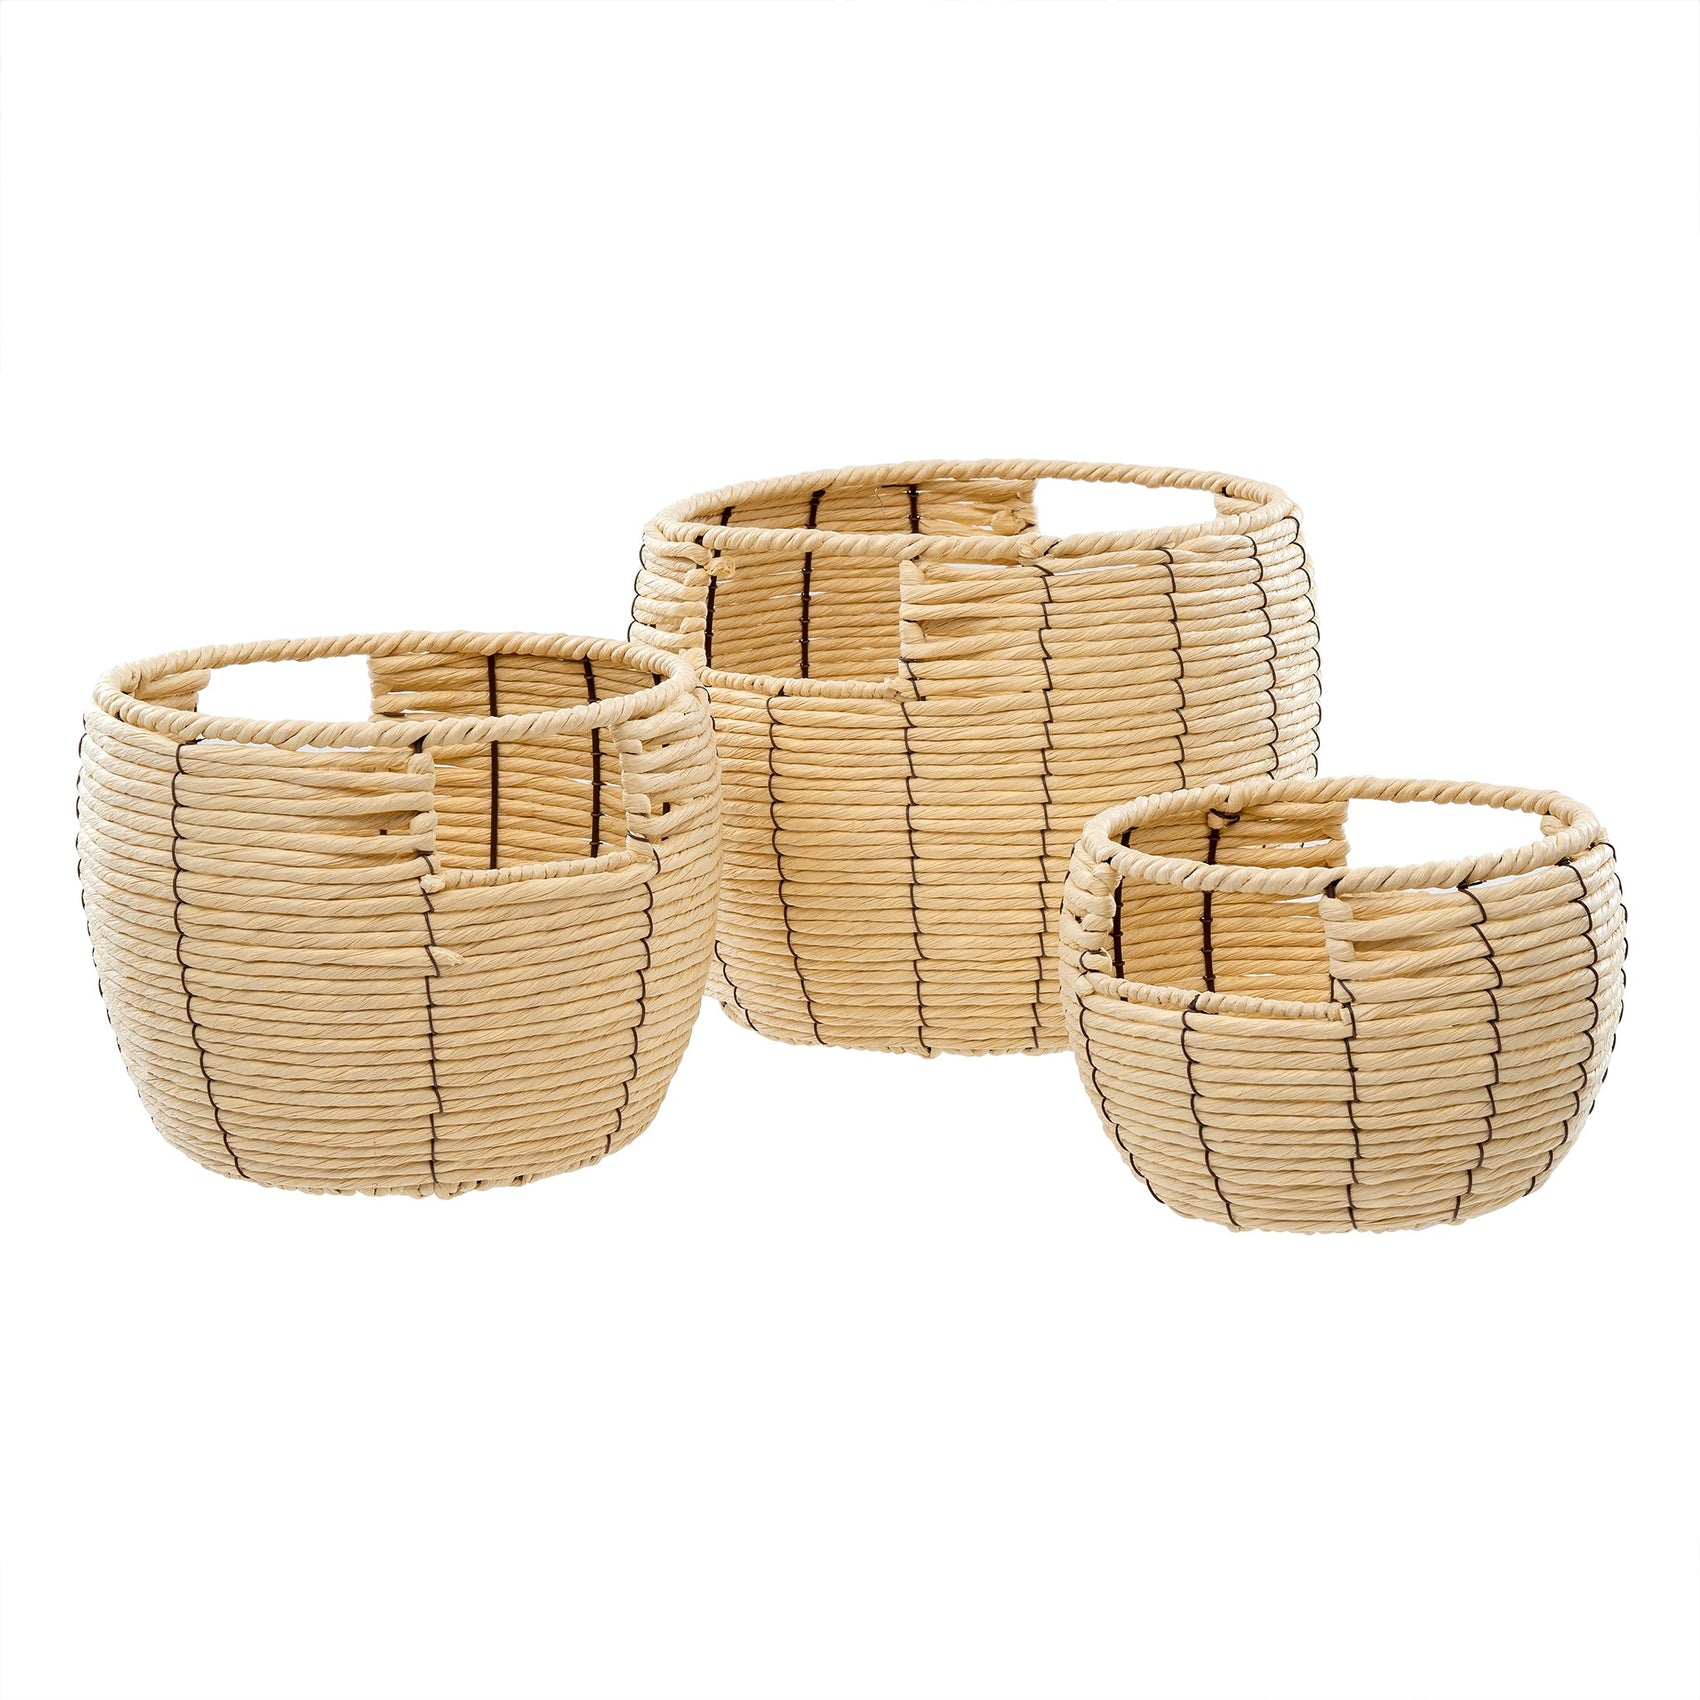 Maeve Baskets | Multiple Sizes